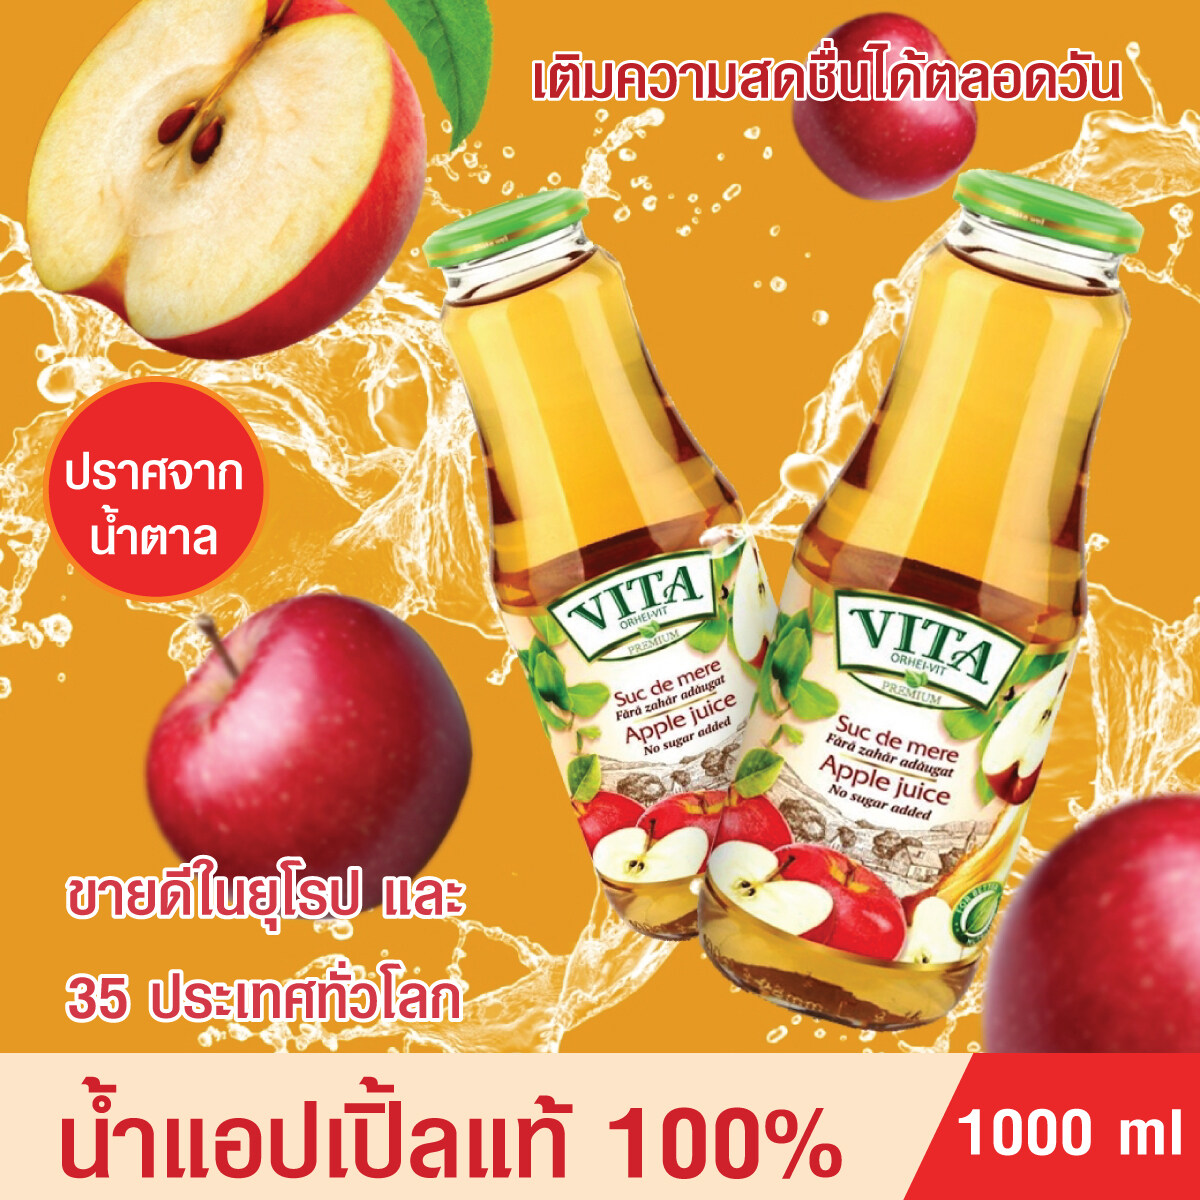 น้ำแอปเปิ้ล น้ำผลไม้ Fruit Juice Apple Juice น้ำแอปเปิ้ลแท้100% ตราวีต้า พรีเมี่ยม VITA ORHEI-VIT PREMIUM 1000ml ชะลอวัย คุมน้ำหนัก ขับสารพิษ ปราศจากน้ำตาล Zep5